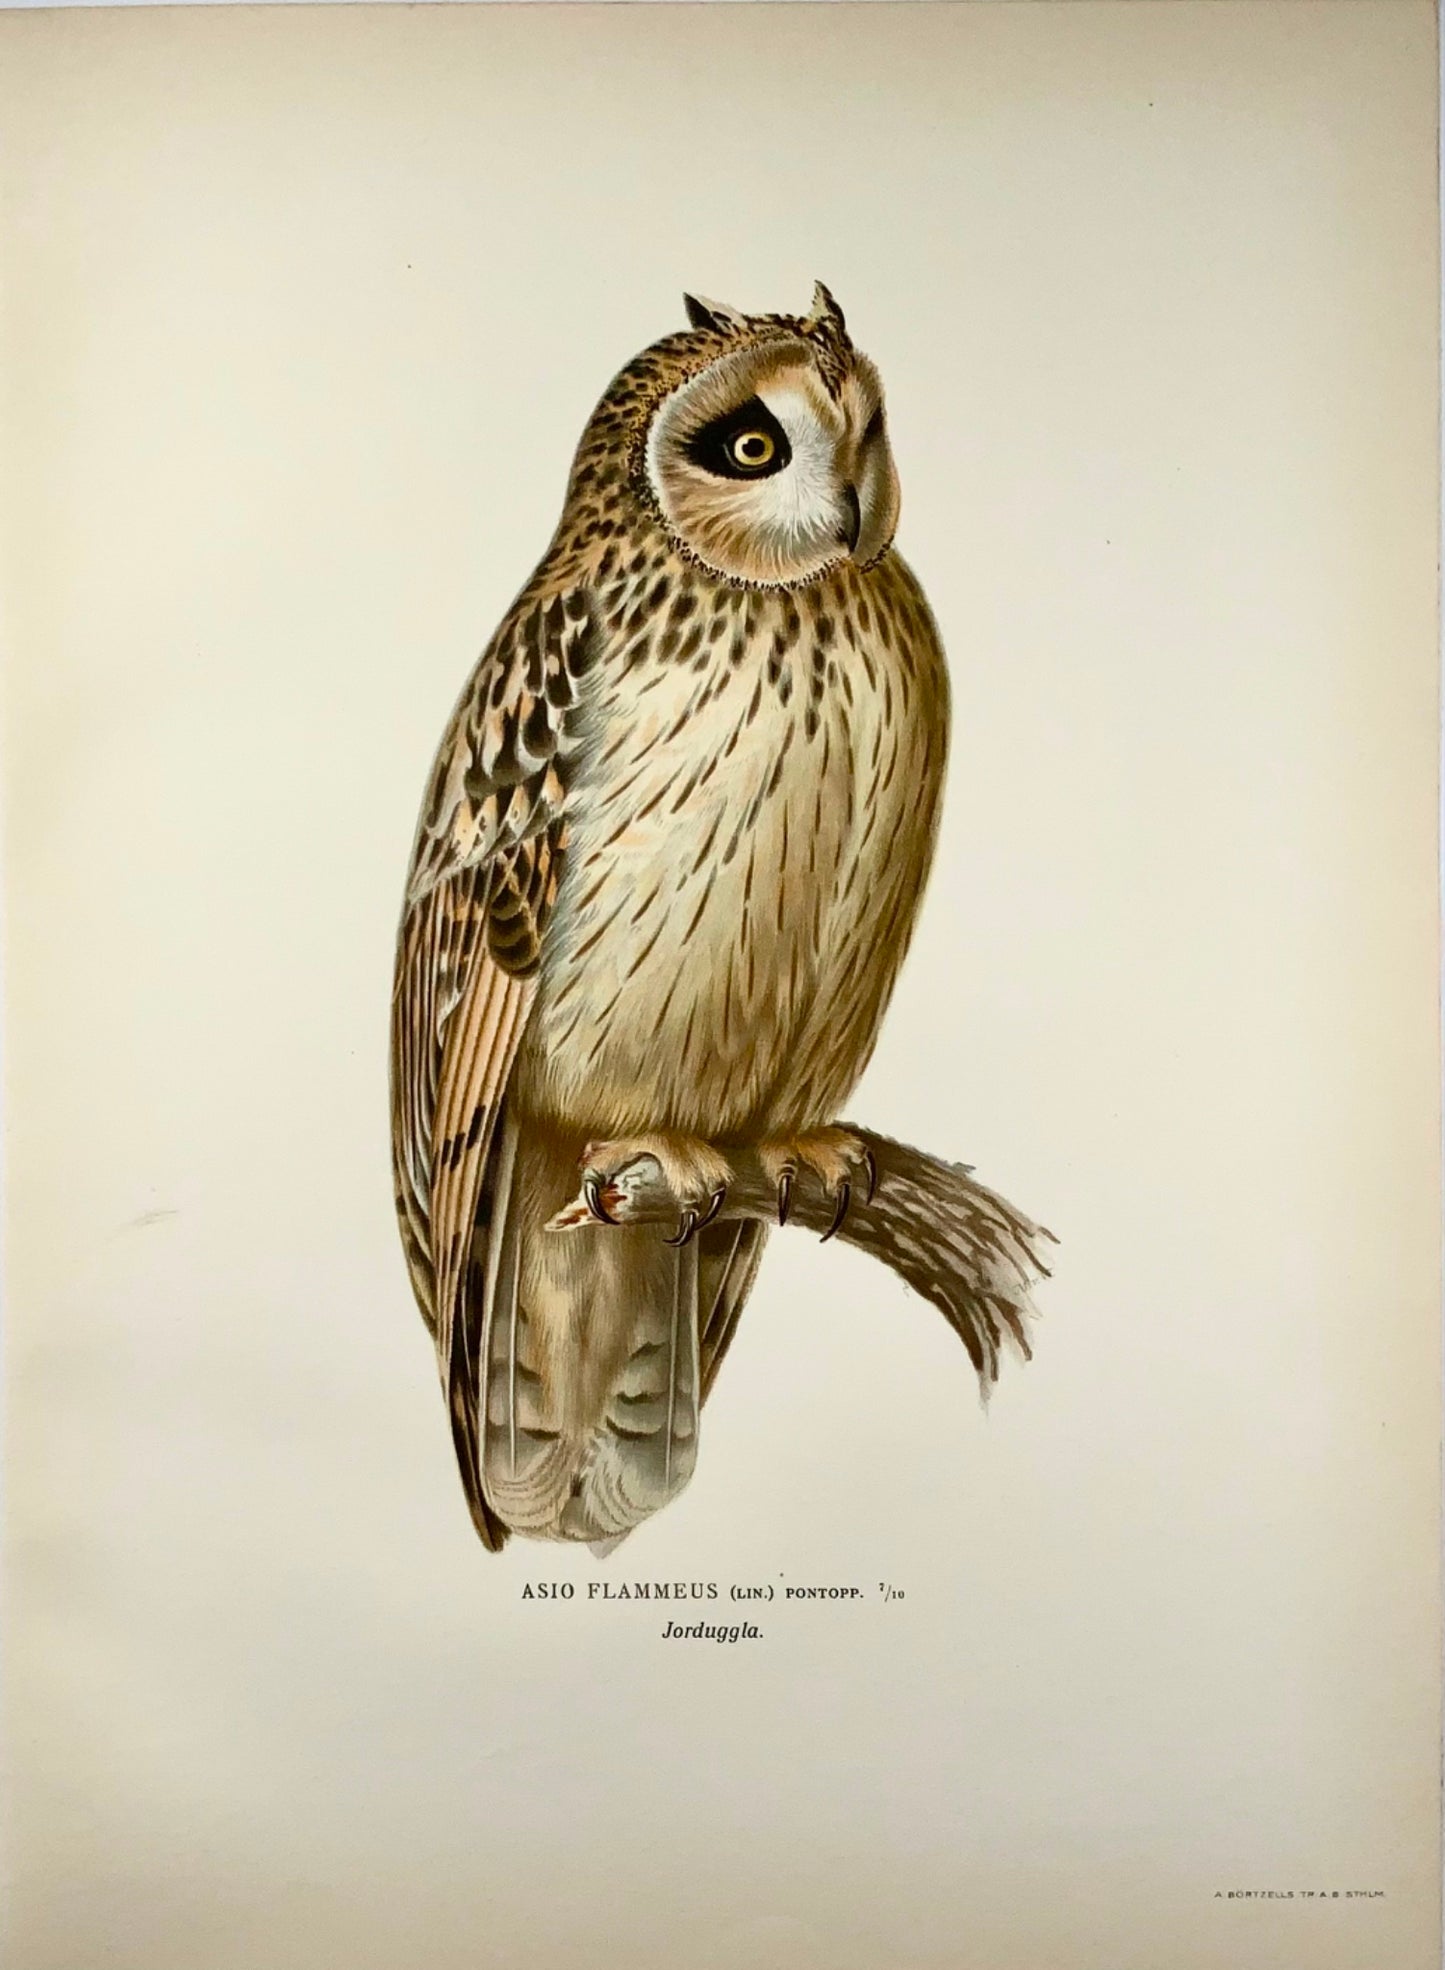 1918 Von Wright, Short-Eared Owl, large folio lithograph, ornithology